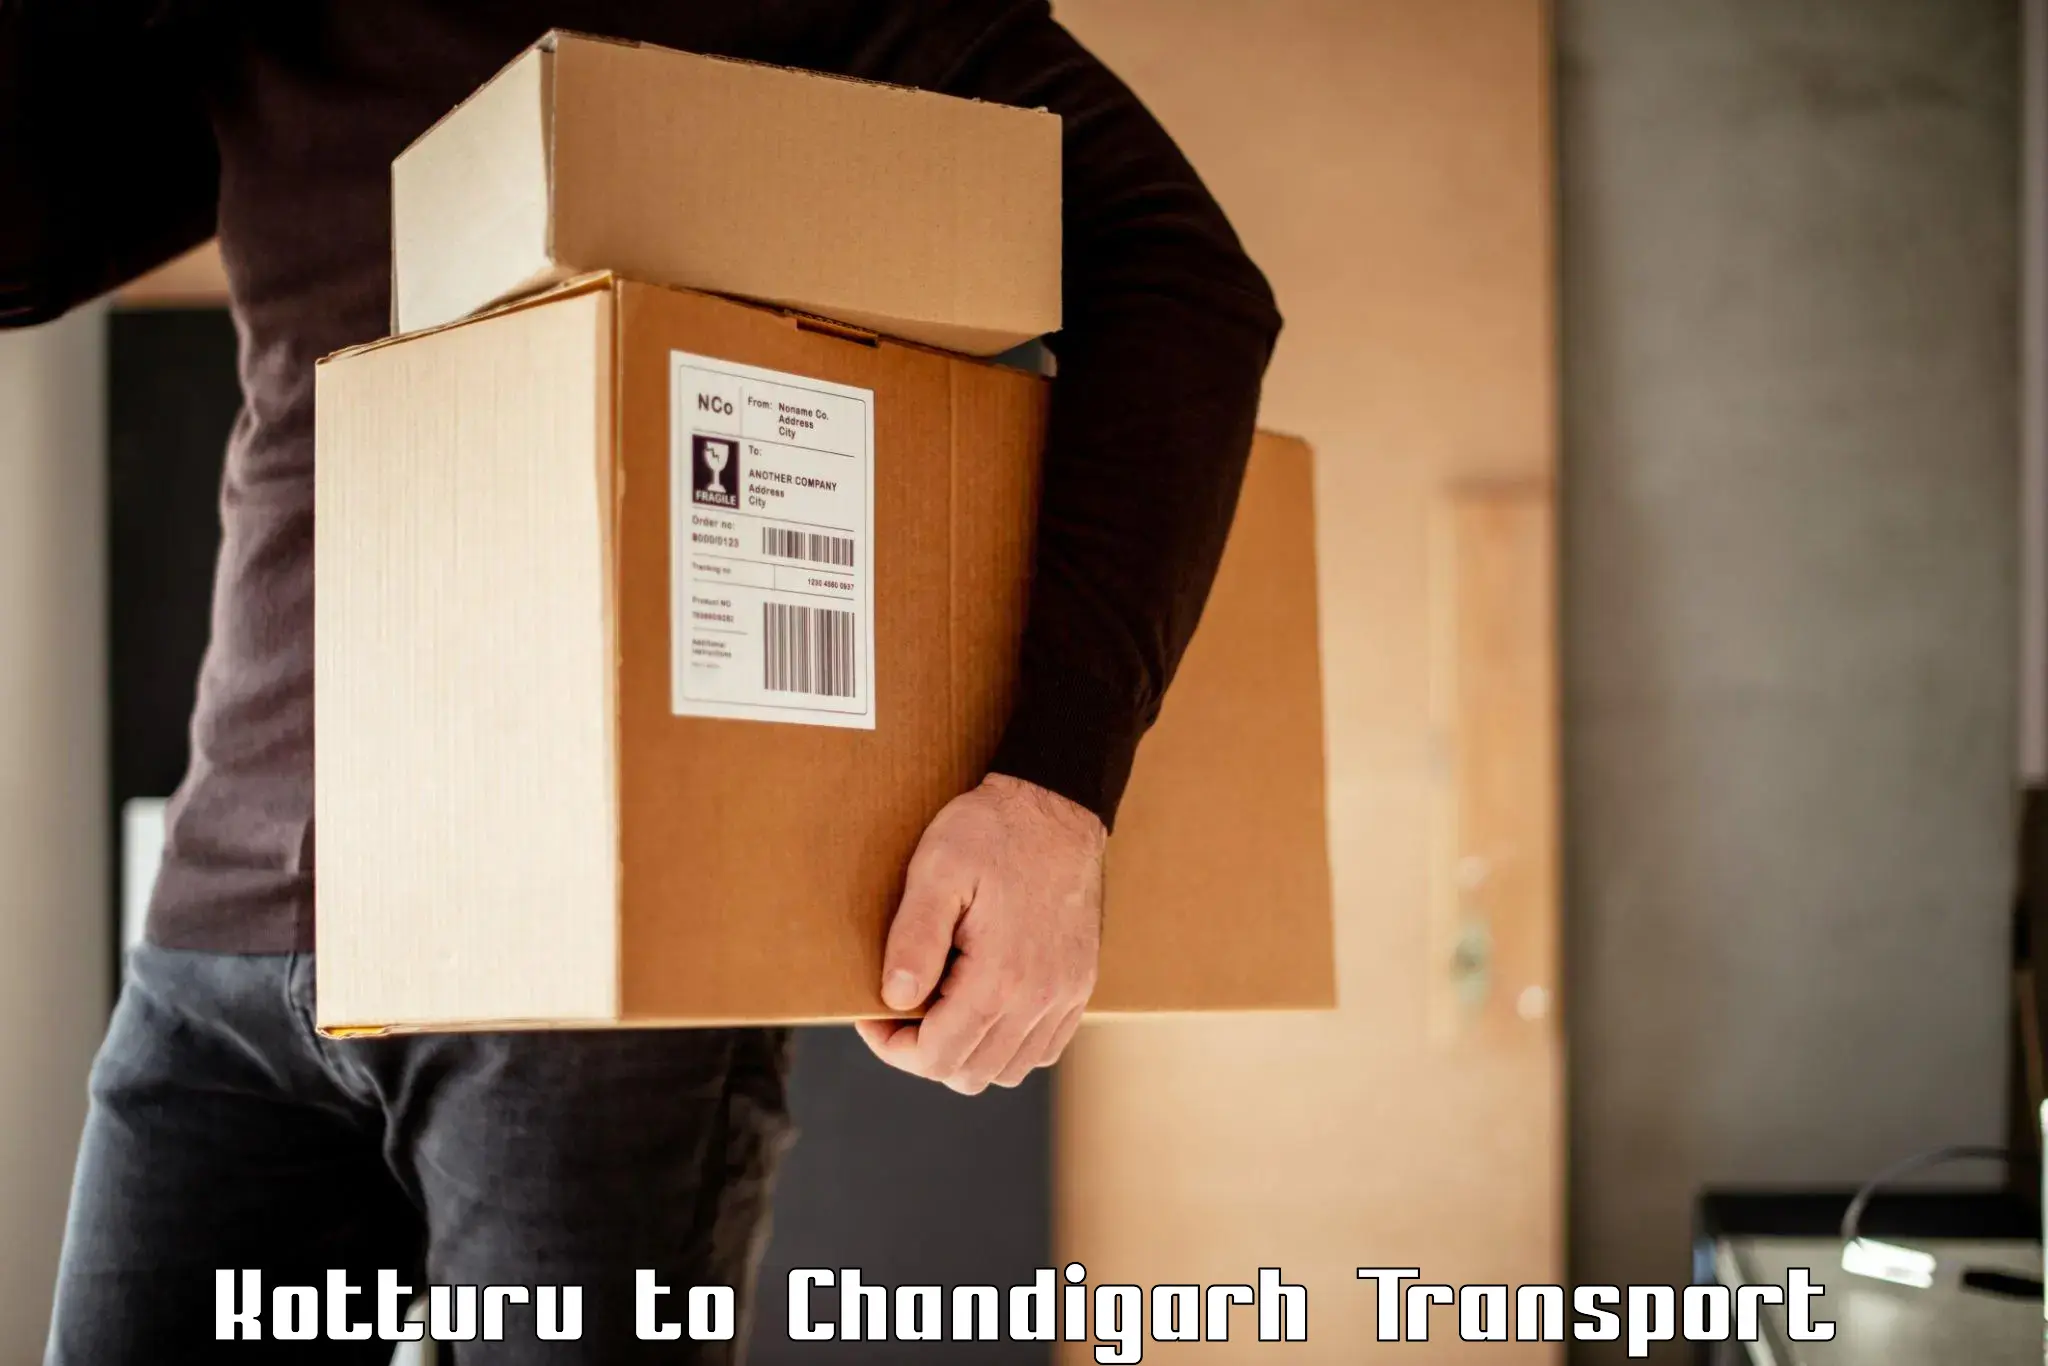 Luggage transport services in Kotturu to Chandigarh